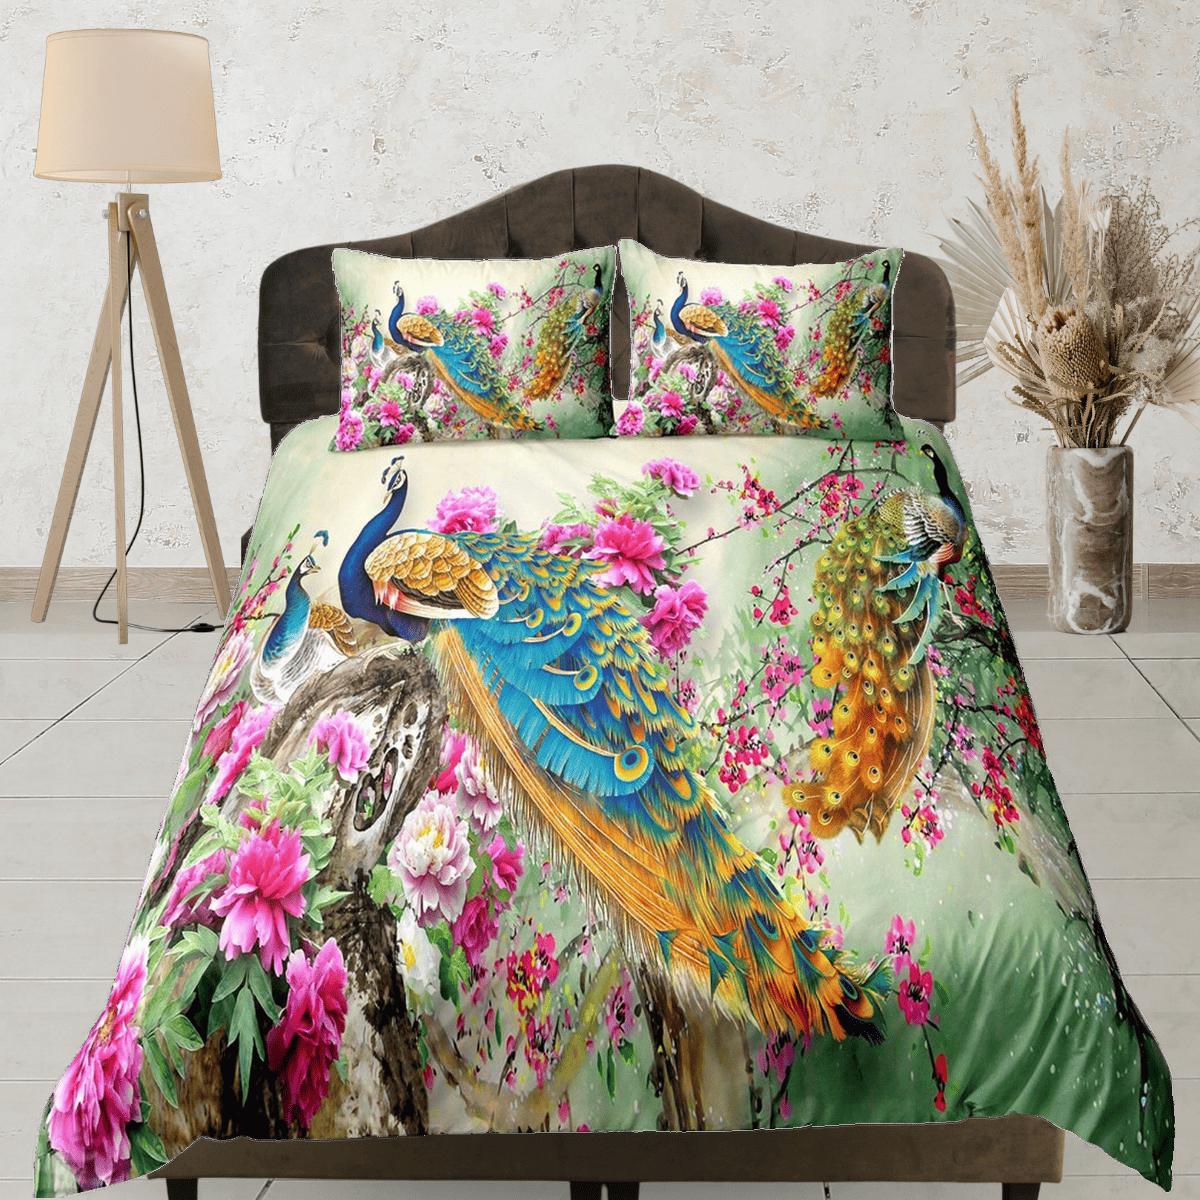 daintyduvet Colorful peacock aesthetic bedding set full, luxury duvet cover queen, king, boho duvet, designer bedding, maximalist decor floral prints